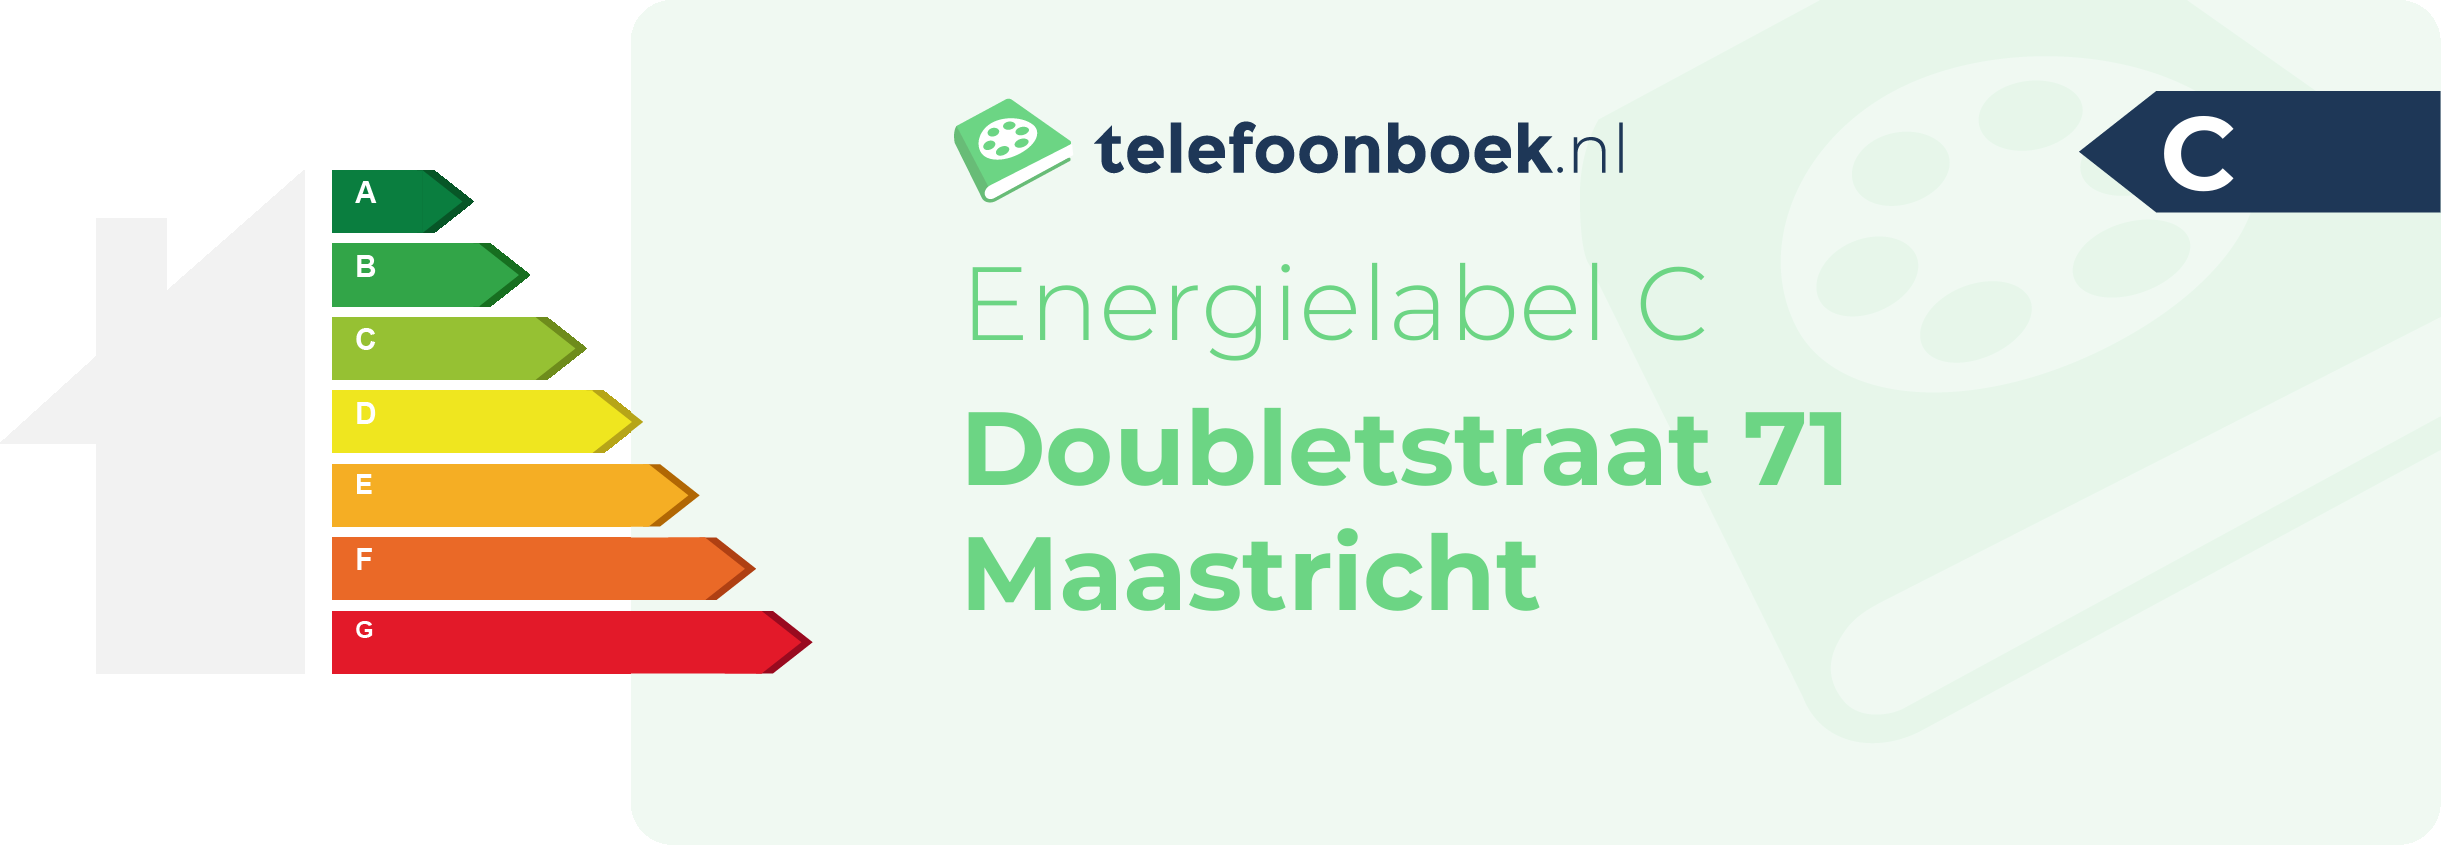 Energielabel Doubletstraat 71 Maastricht